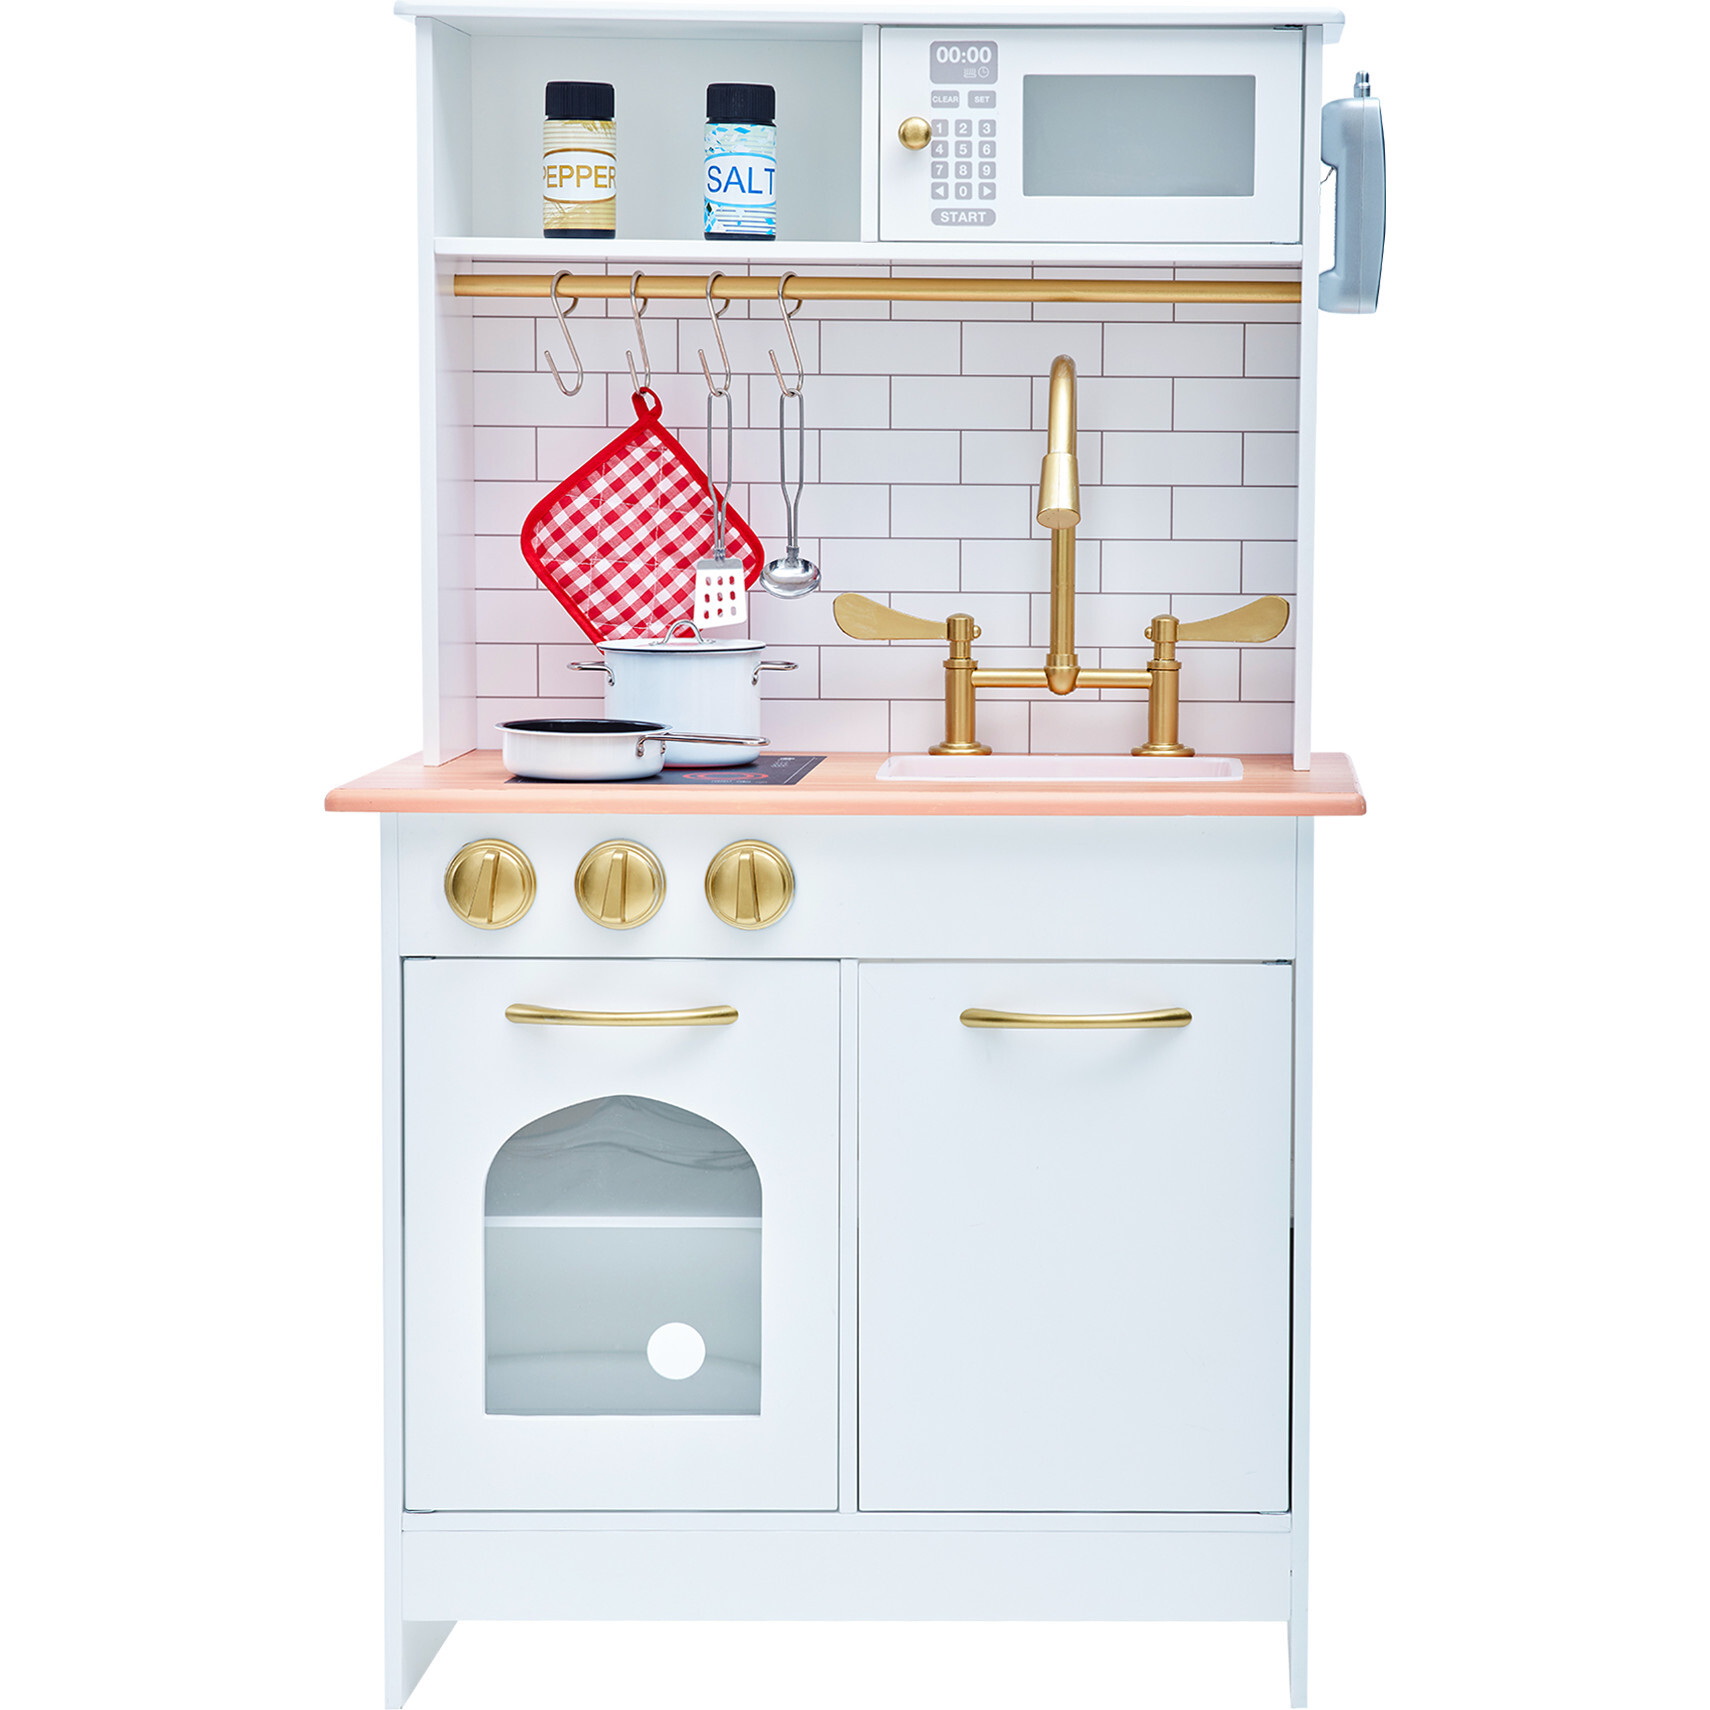 Teamson Kids - Little Chef Frankfurt Wooden Toaster Play Kitchen Accessories, Green